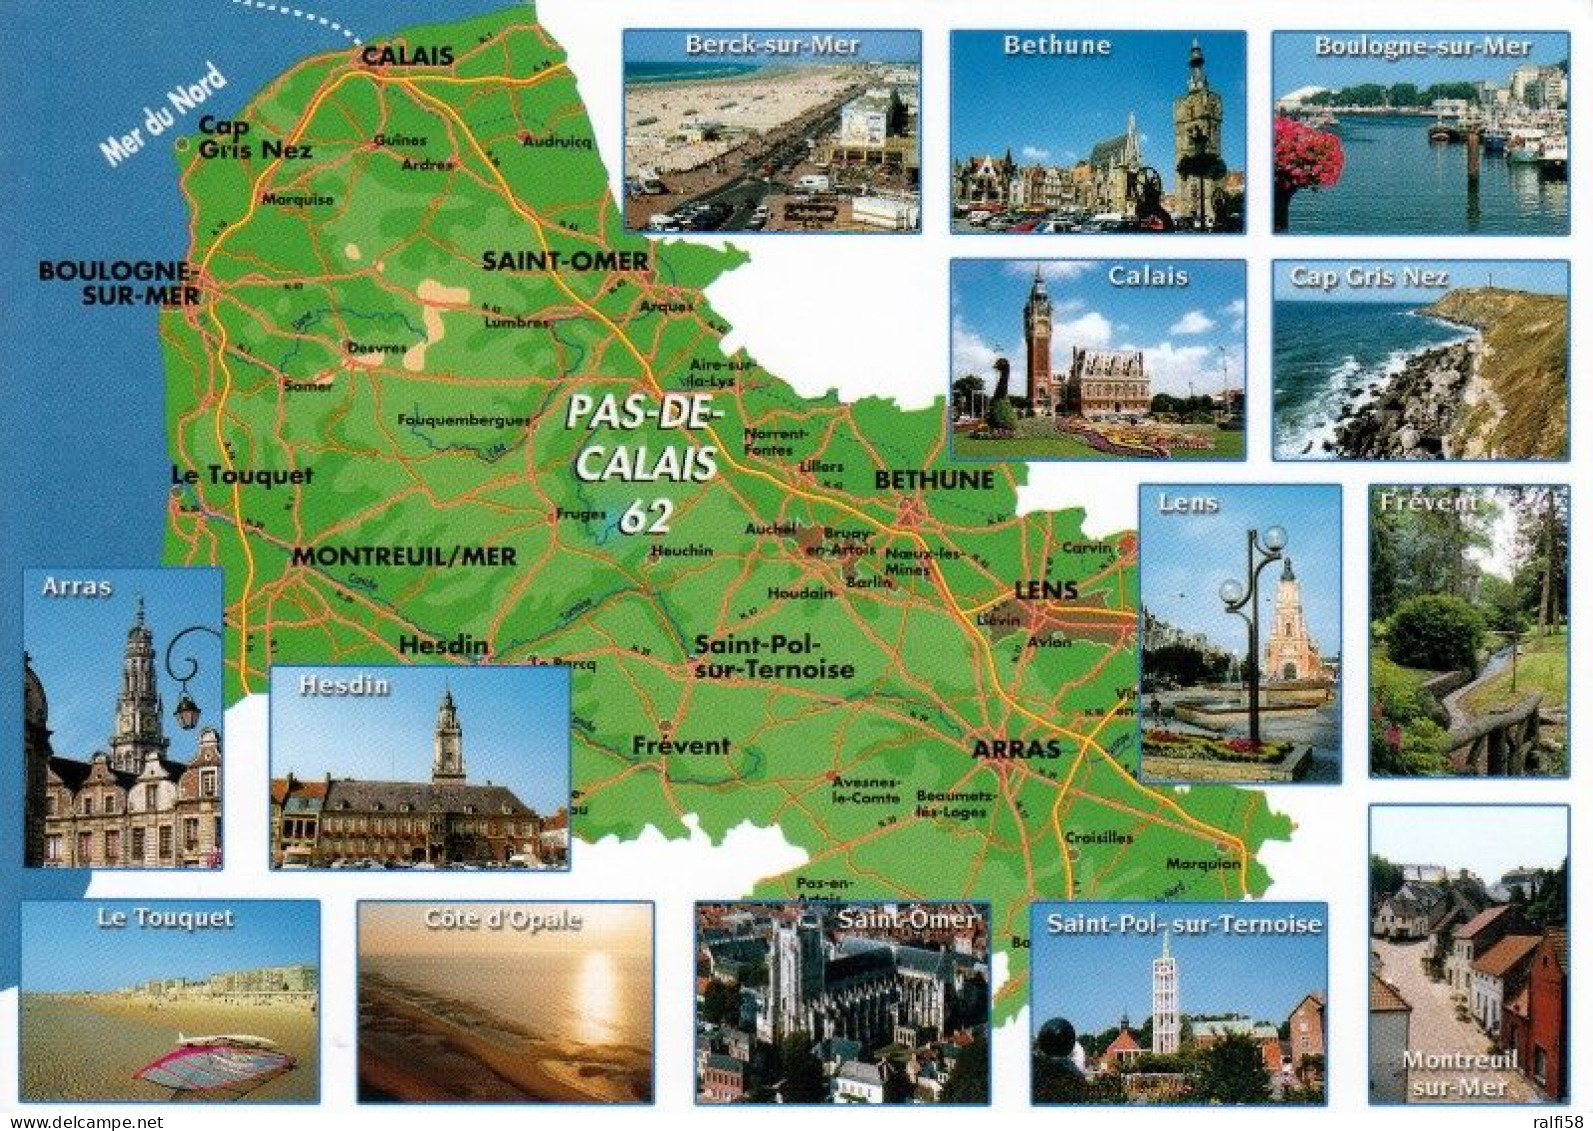 1 Map Of France * 1 Ansichtskarte Mit Der Landkarte - Département Pas-de-Calais - Ordnungsnummer 62 * - Landkaarten